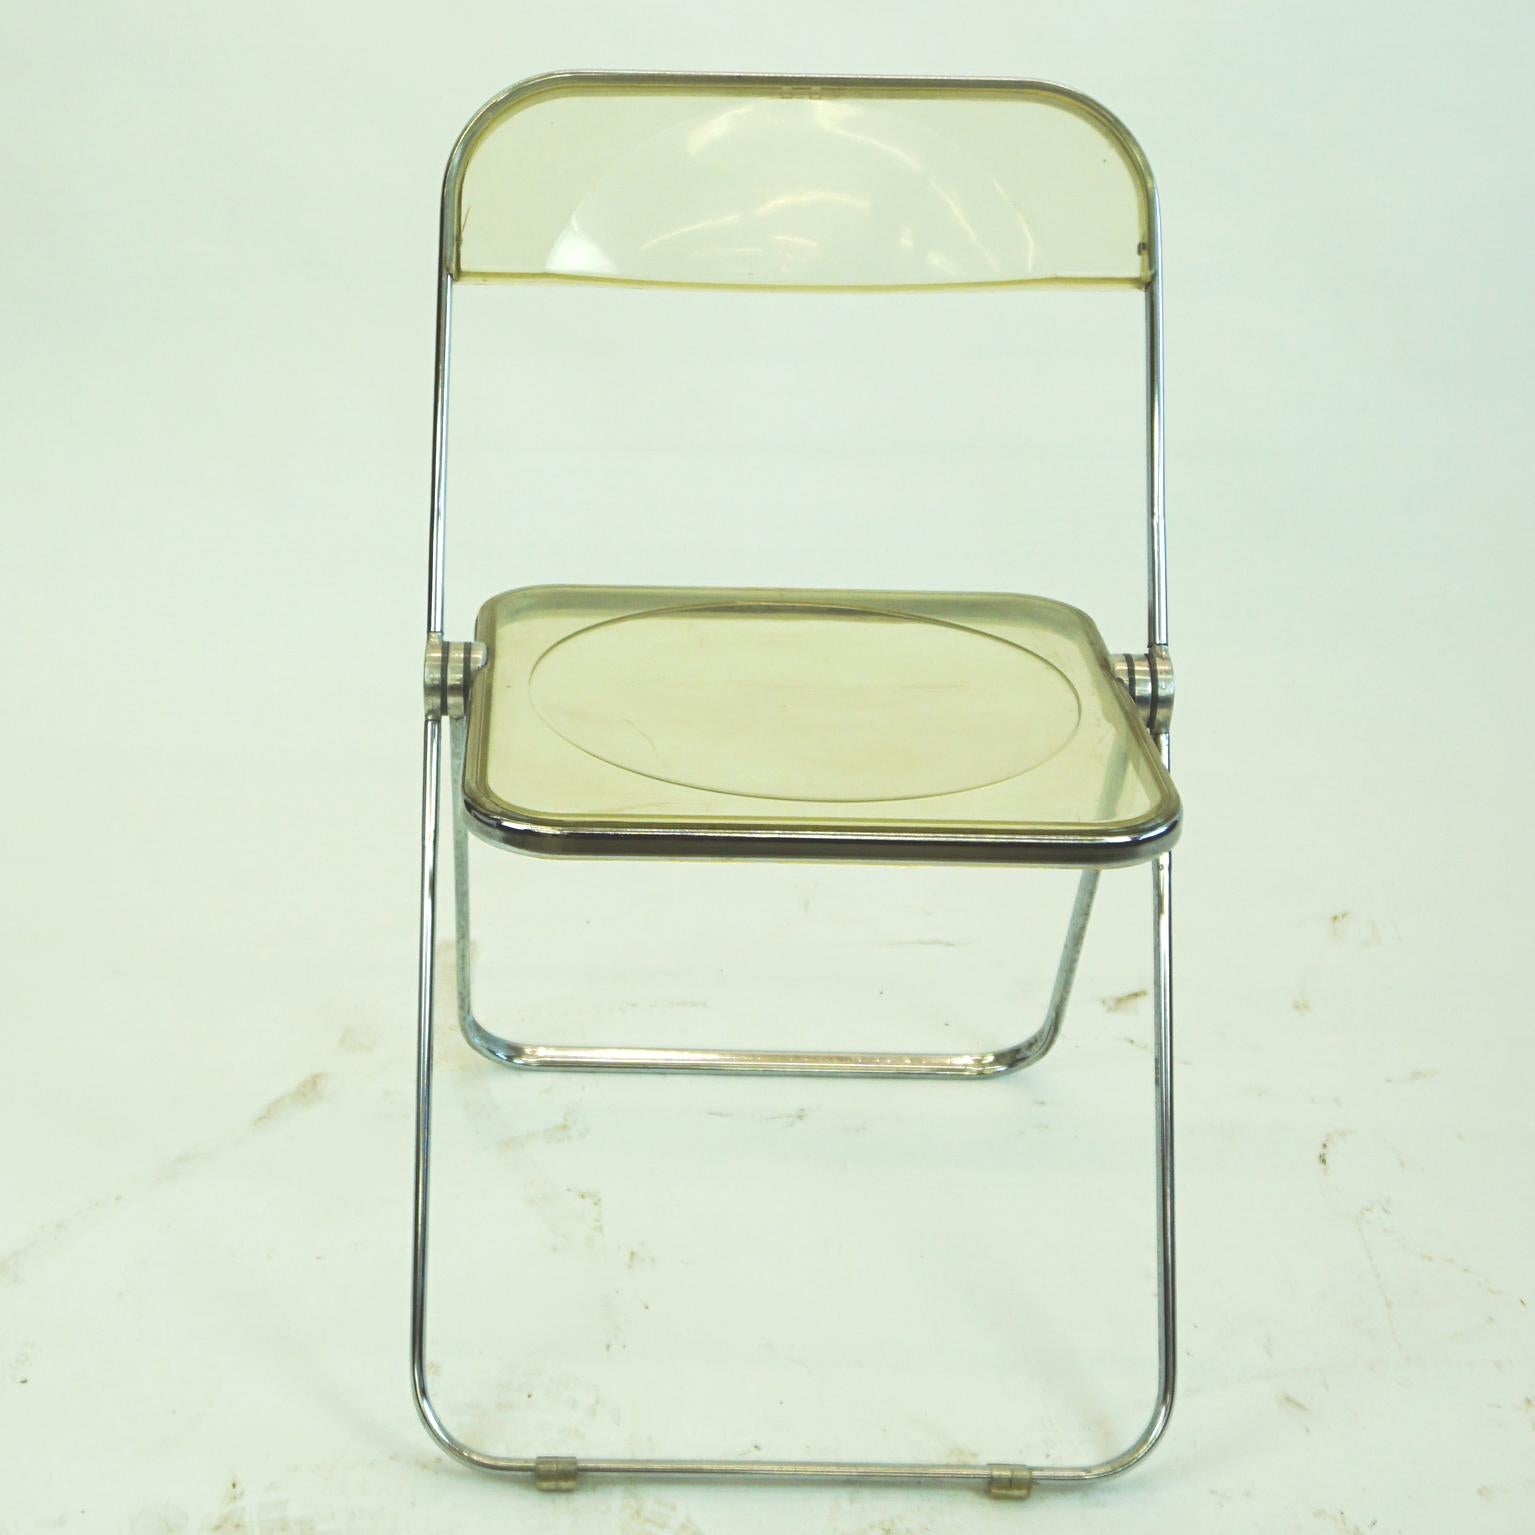 chaise pliante italienne iconique de style Mid-Century Modern en Lucite et chrome, conçue par Giancarlo Piretti 1967 pour Anonima Castelli, Italie. La chaise pliante Plia est un véritable classique du design puisqu'elle a remporté plusieurs prix et